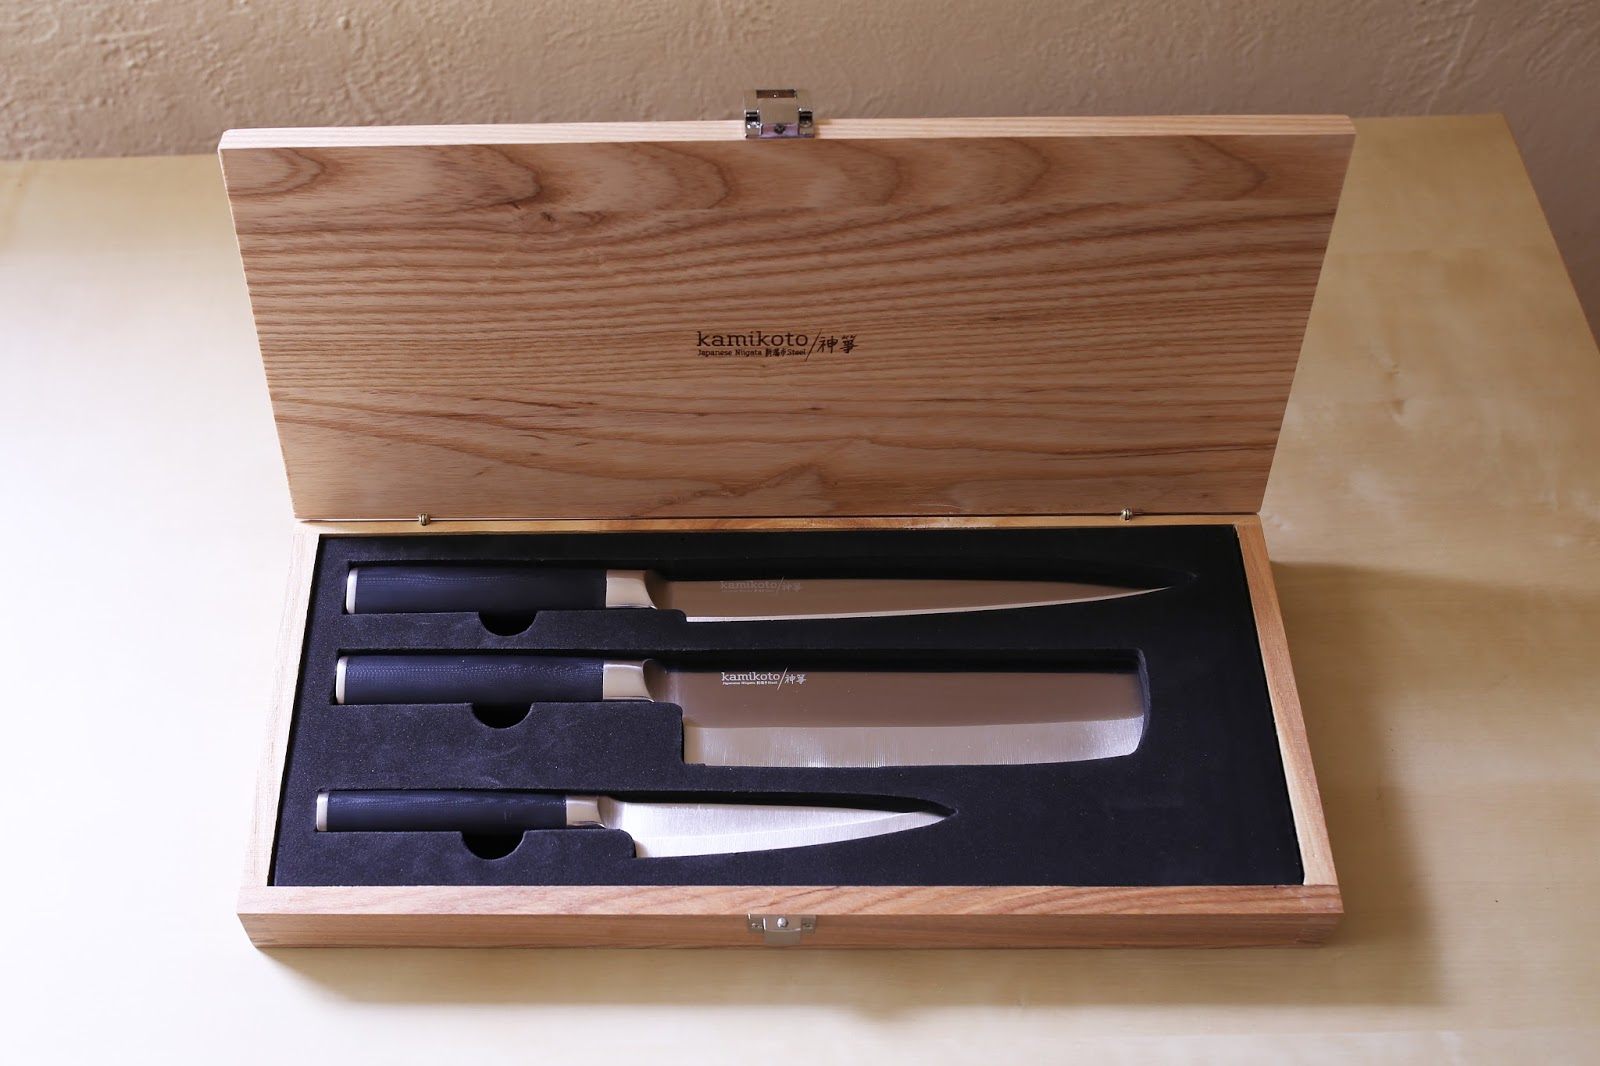 Kanpeki Knife Set - Buy 1 Get 1 Free